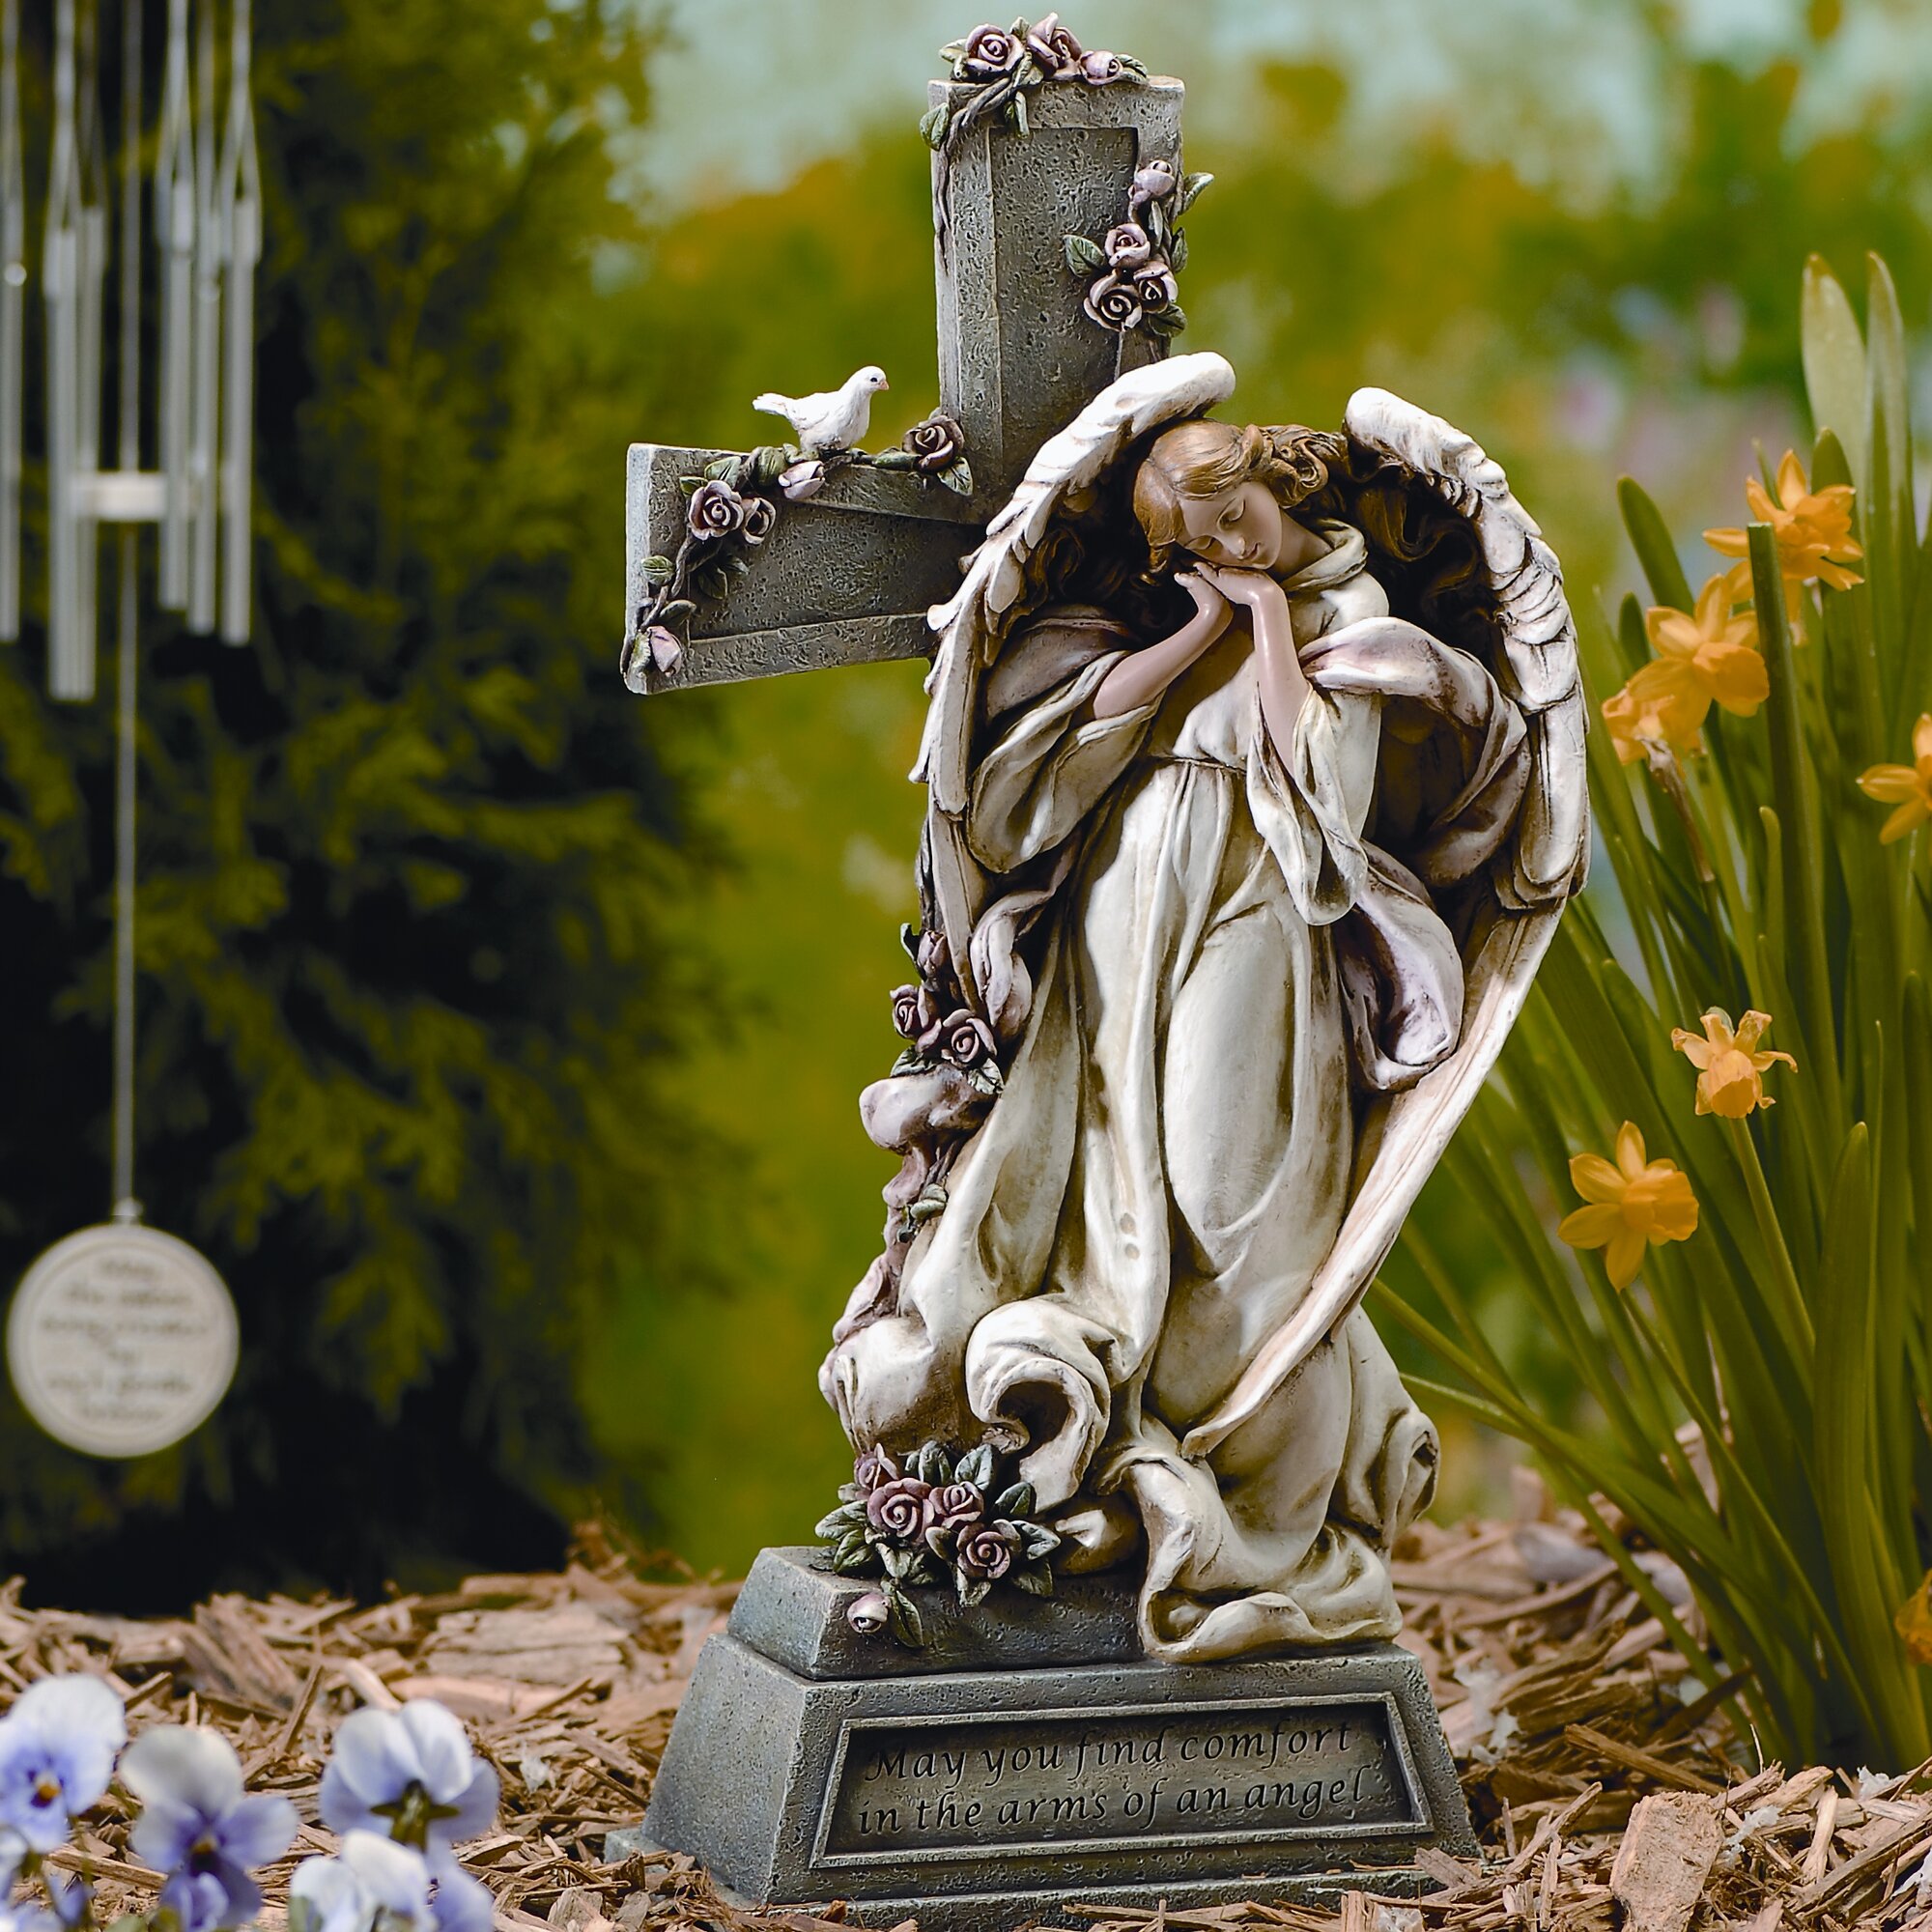 Roman, Inc. Garden Angel with Cross Statue & Reviews | Wayfair